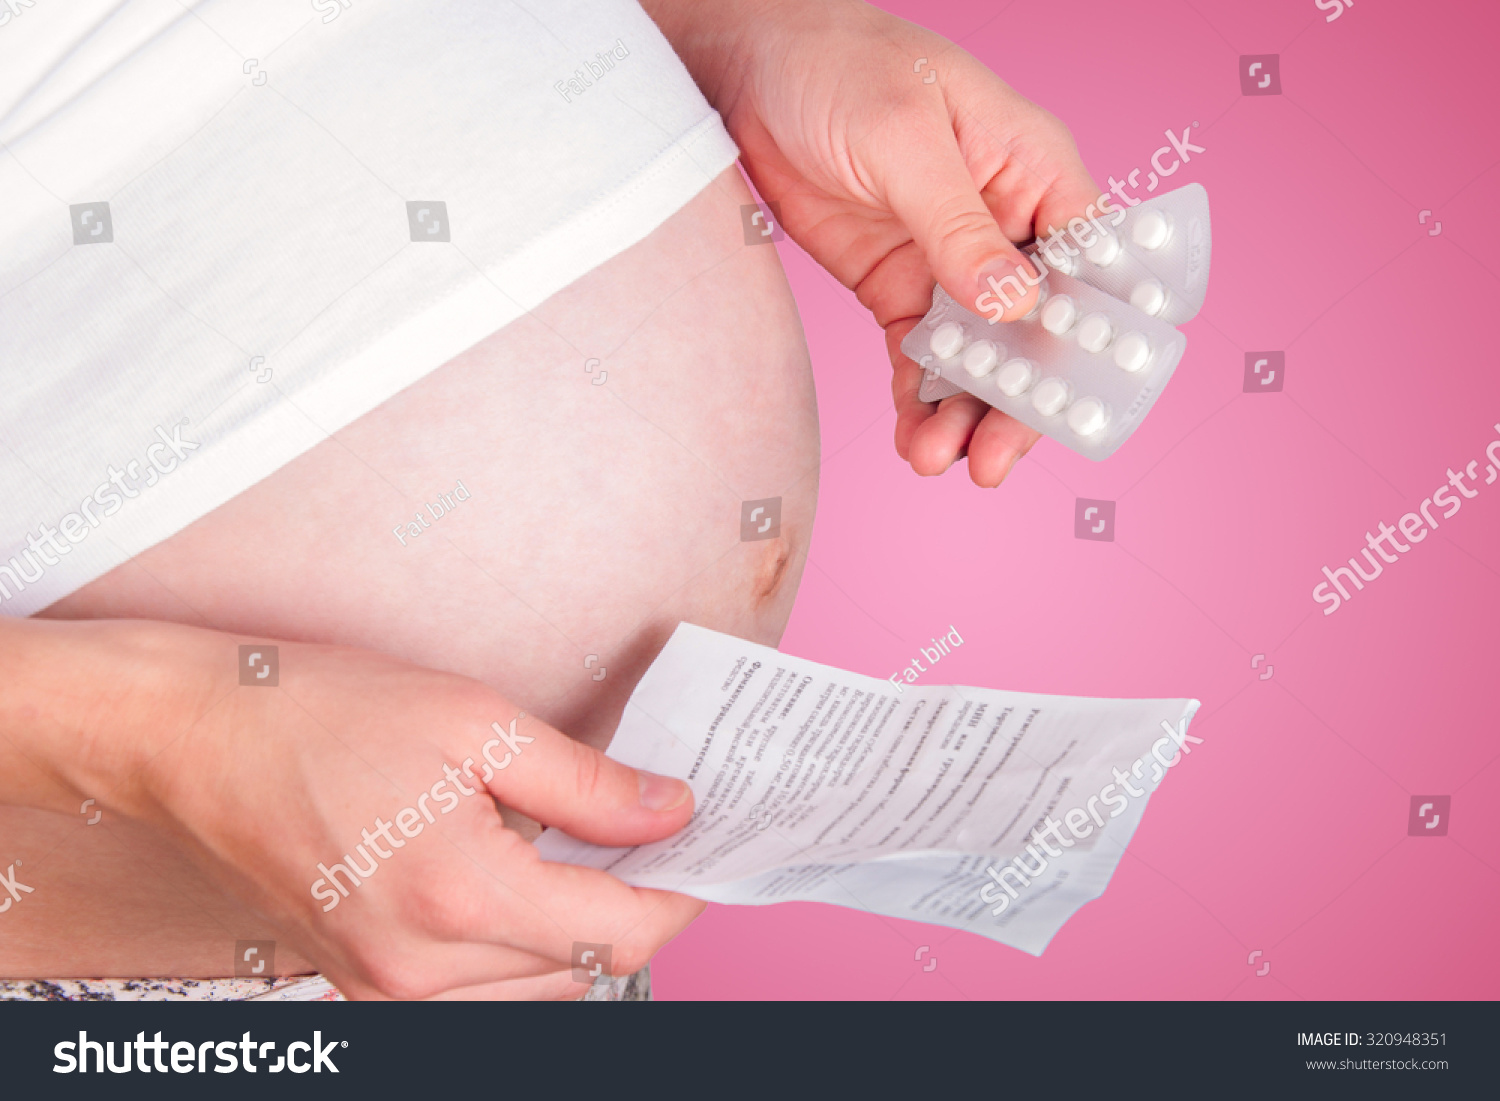 Беременная с таблетками